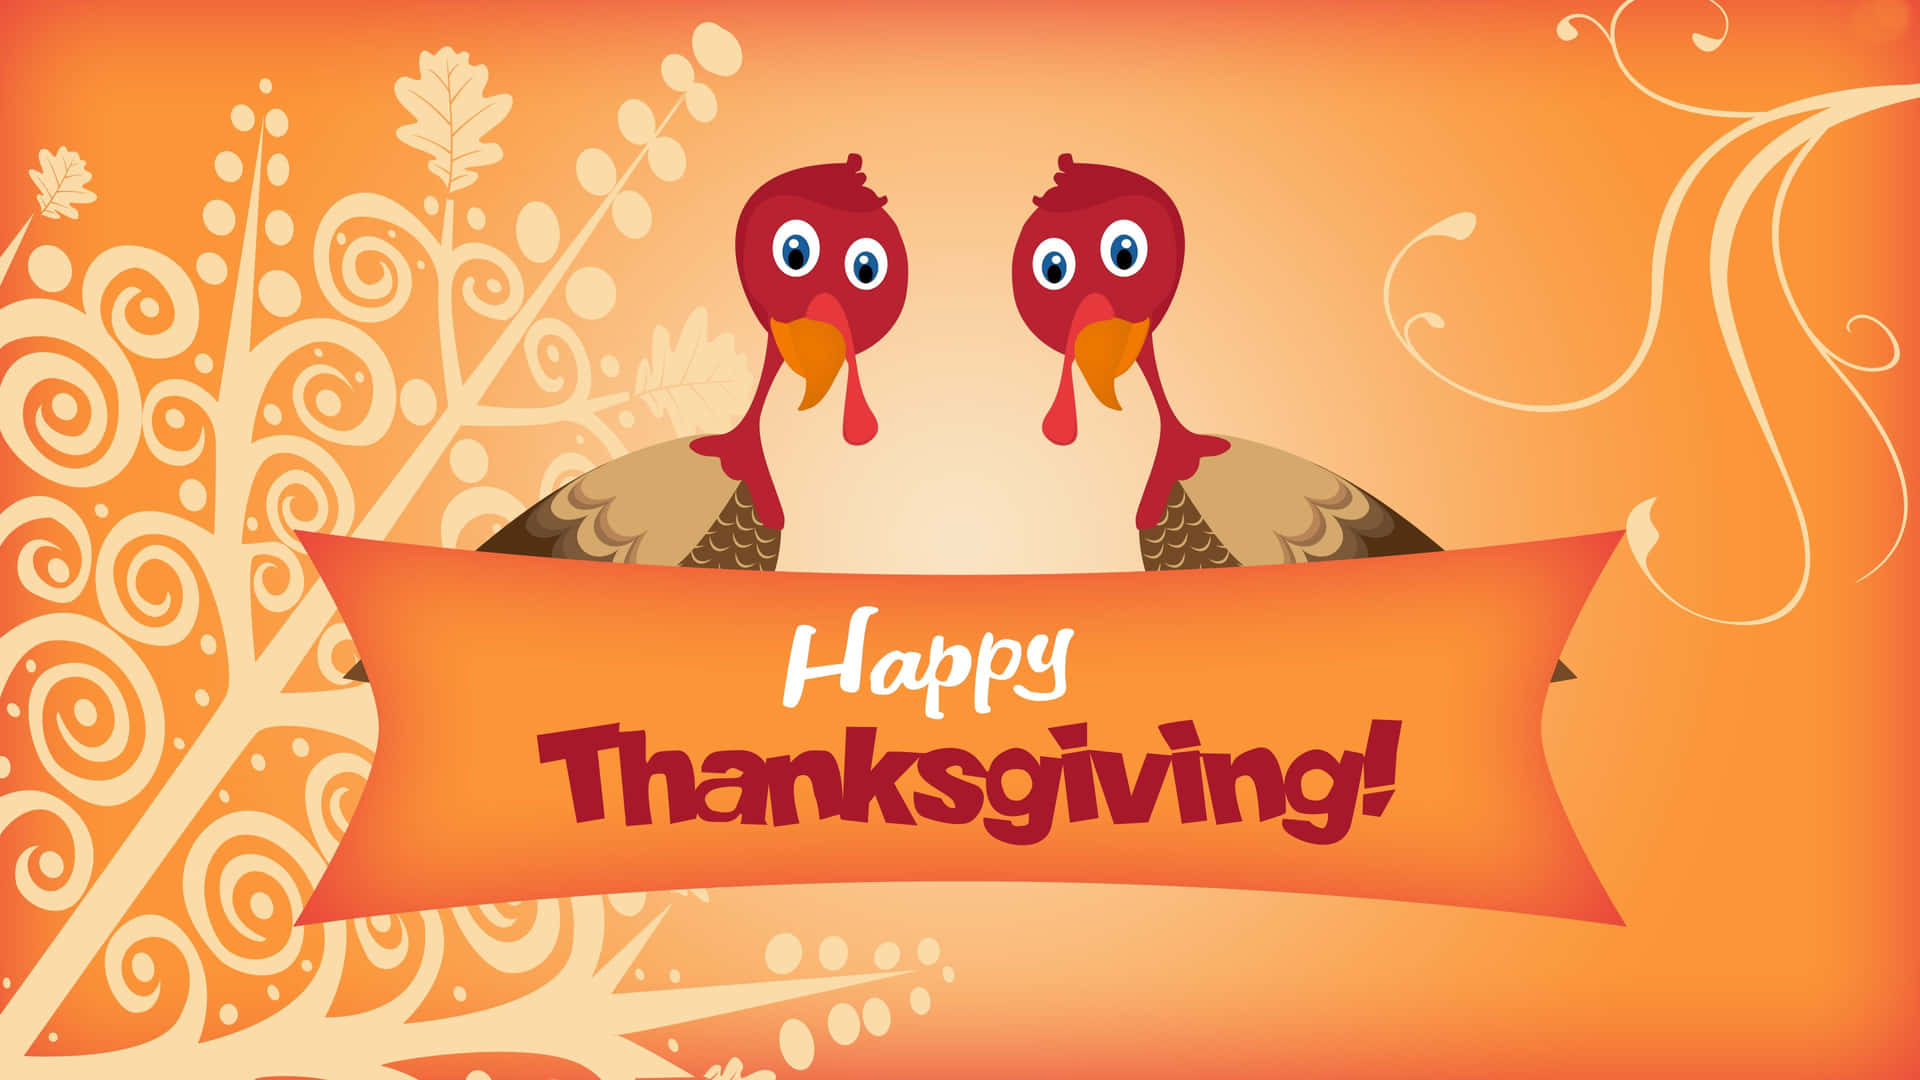 Let Us Thanksgiving Together!